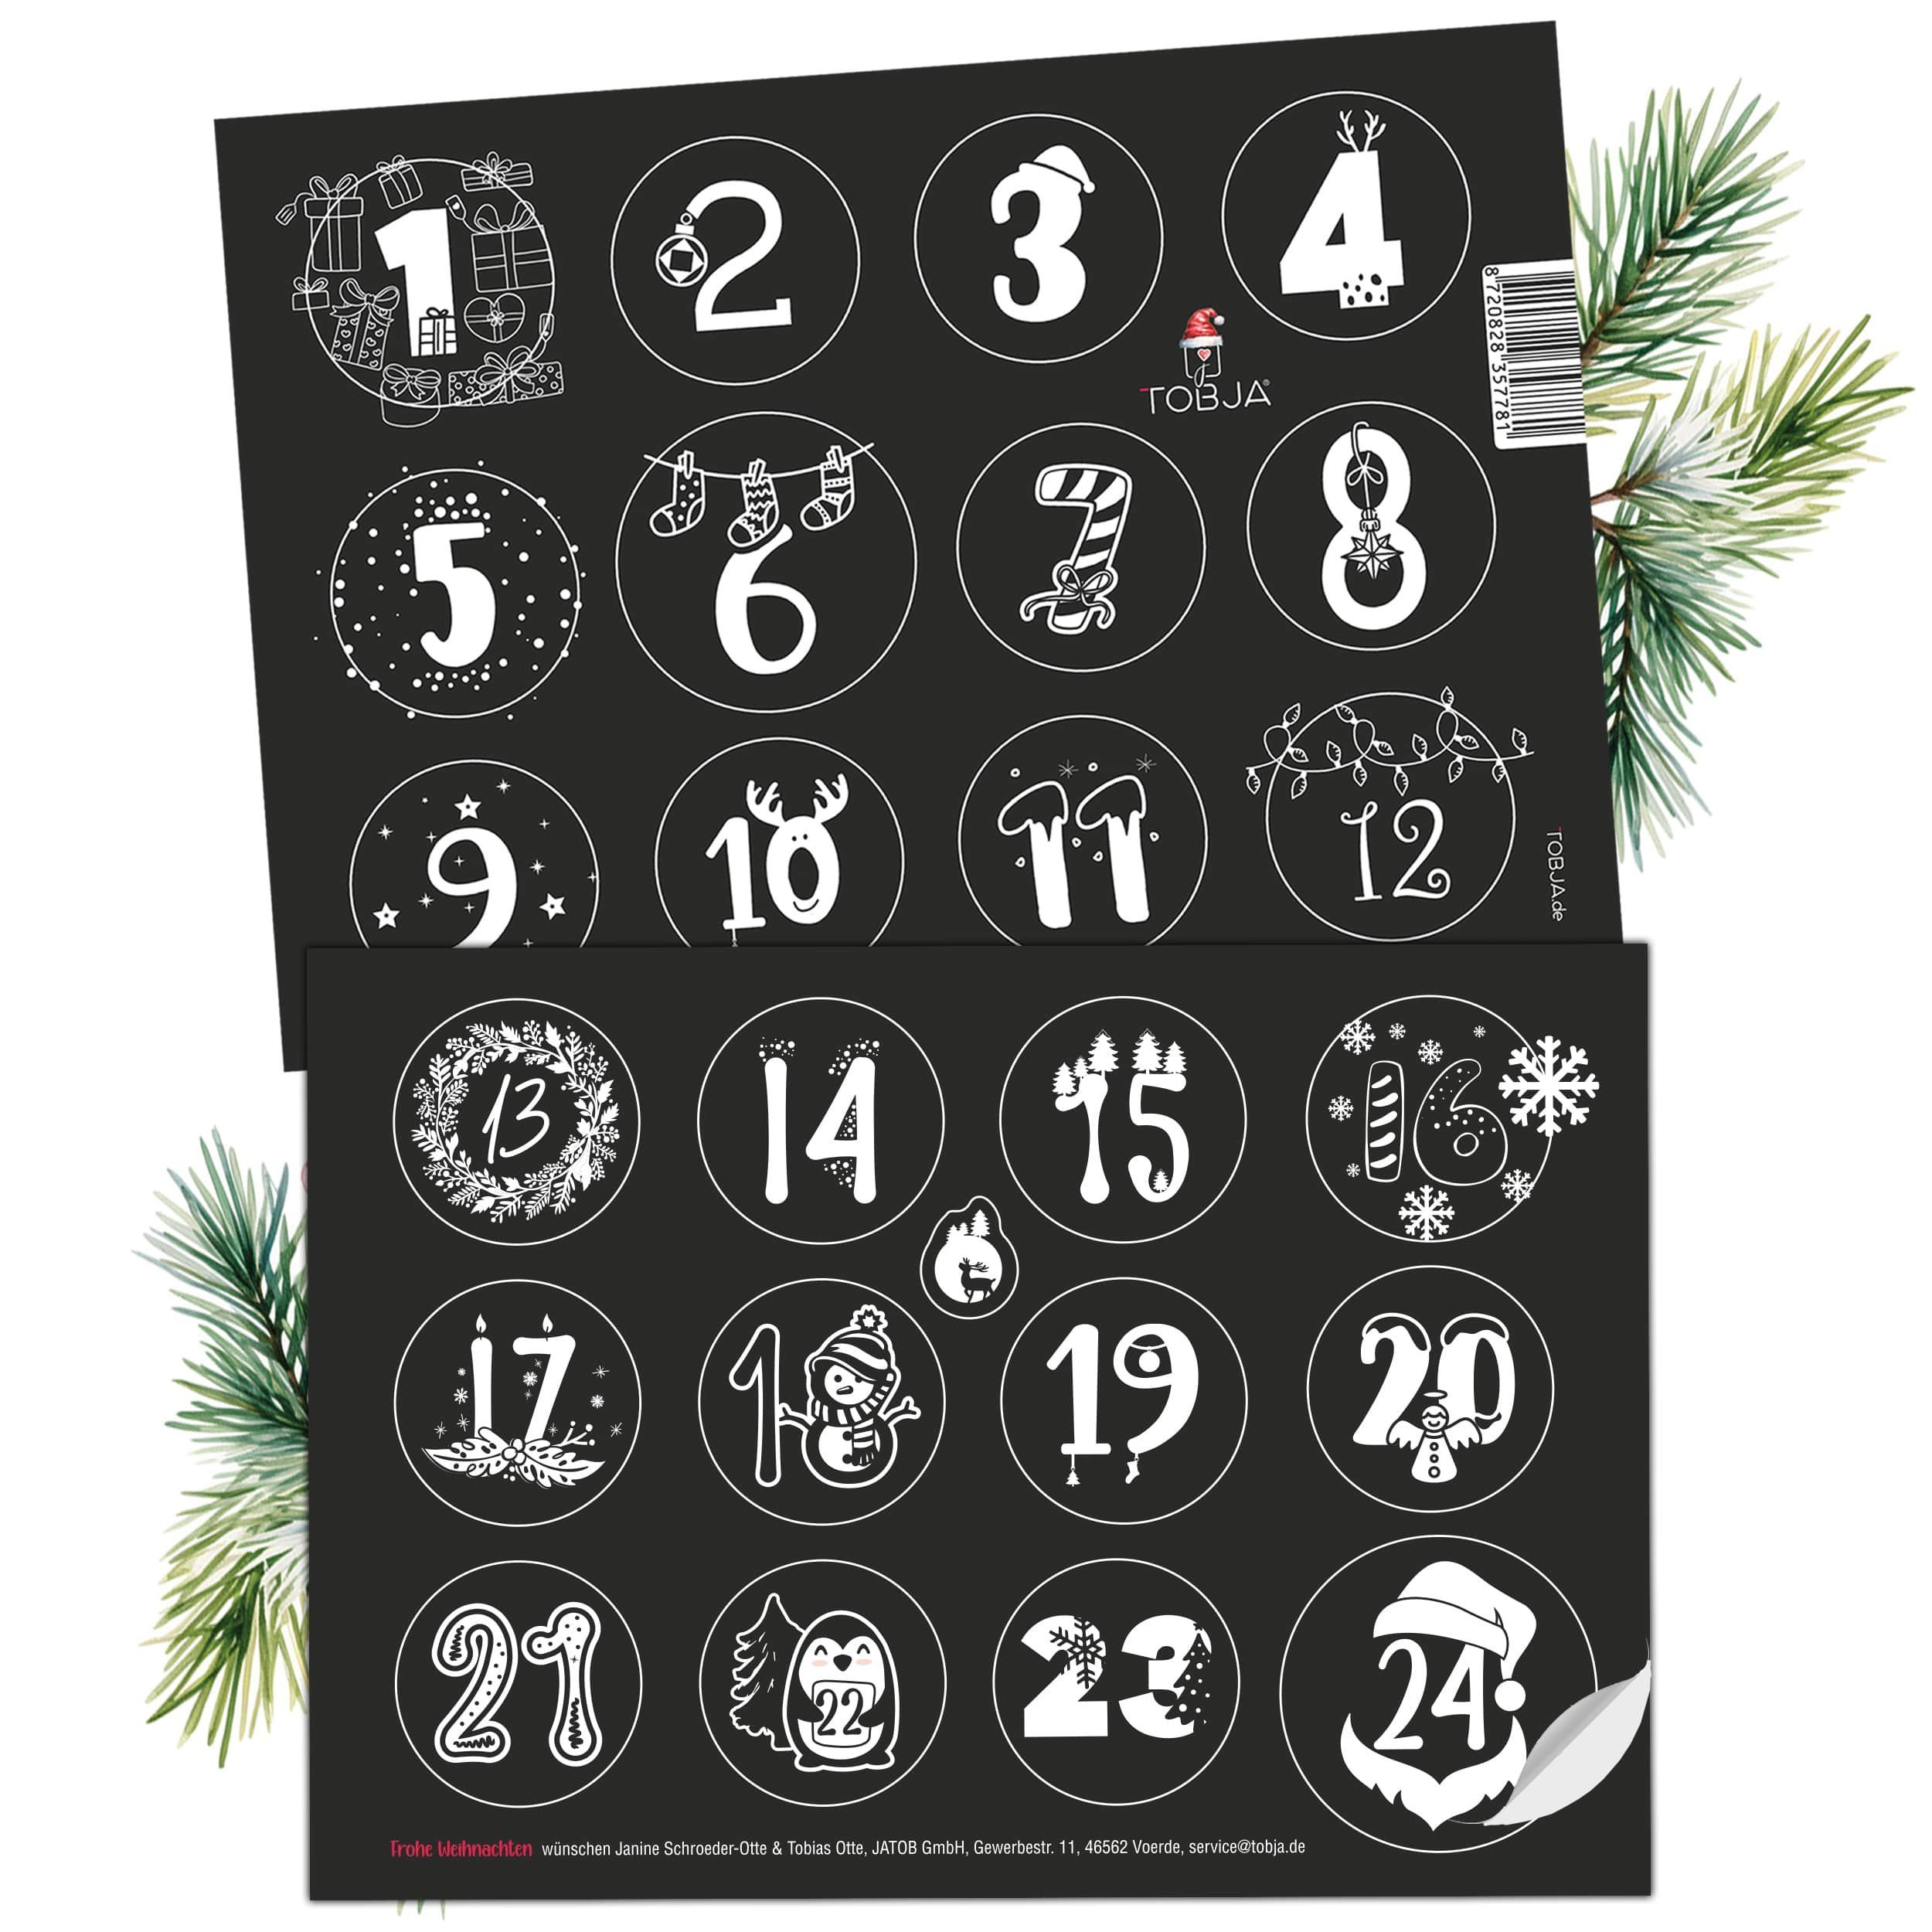 TOBJA Adventskalender Adventsaufkleber Sticker Schwarz-Weiß 1-24, Zahlenaufkleber Weihnachten. Nummern Advent Advent Aufkleber Weihnachtsaufkleber